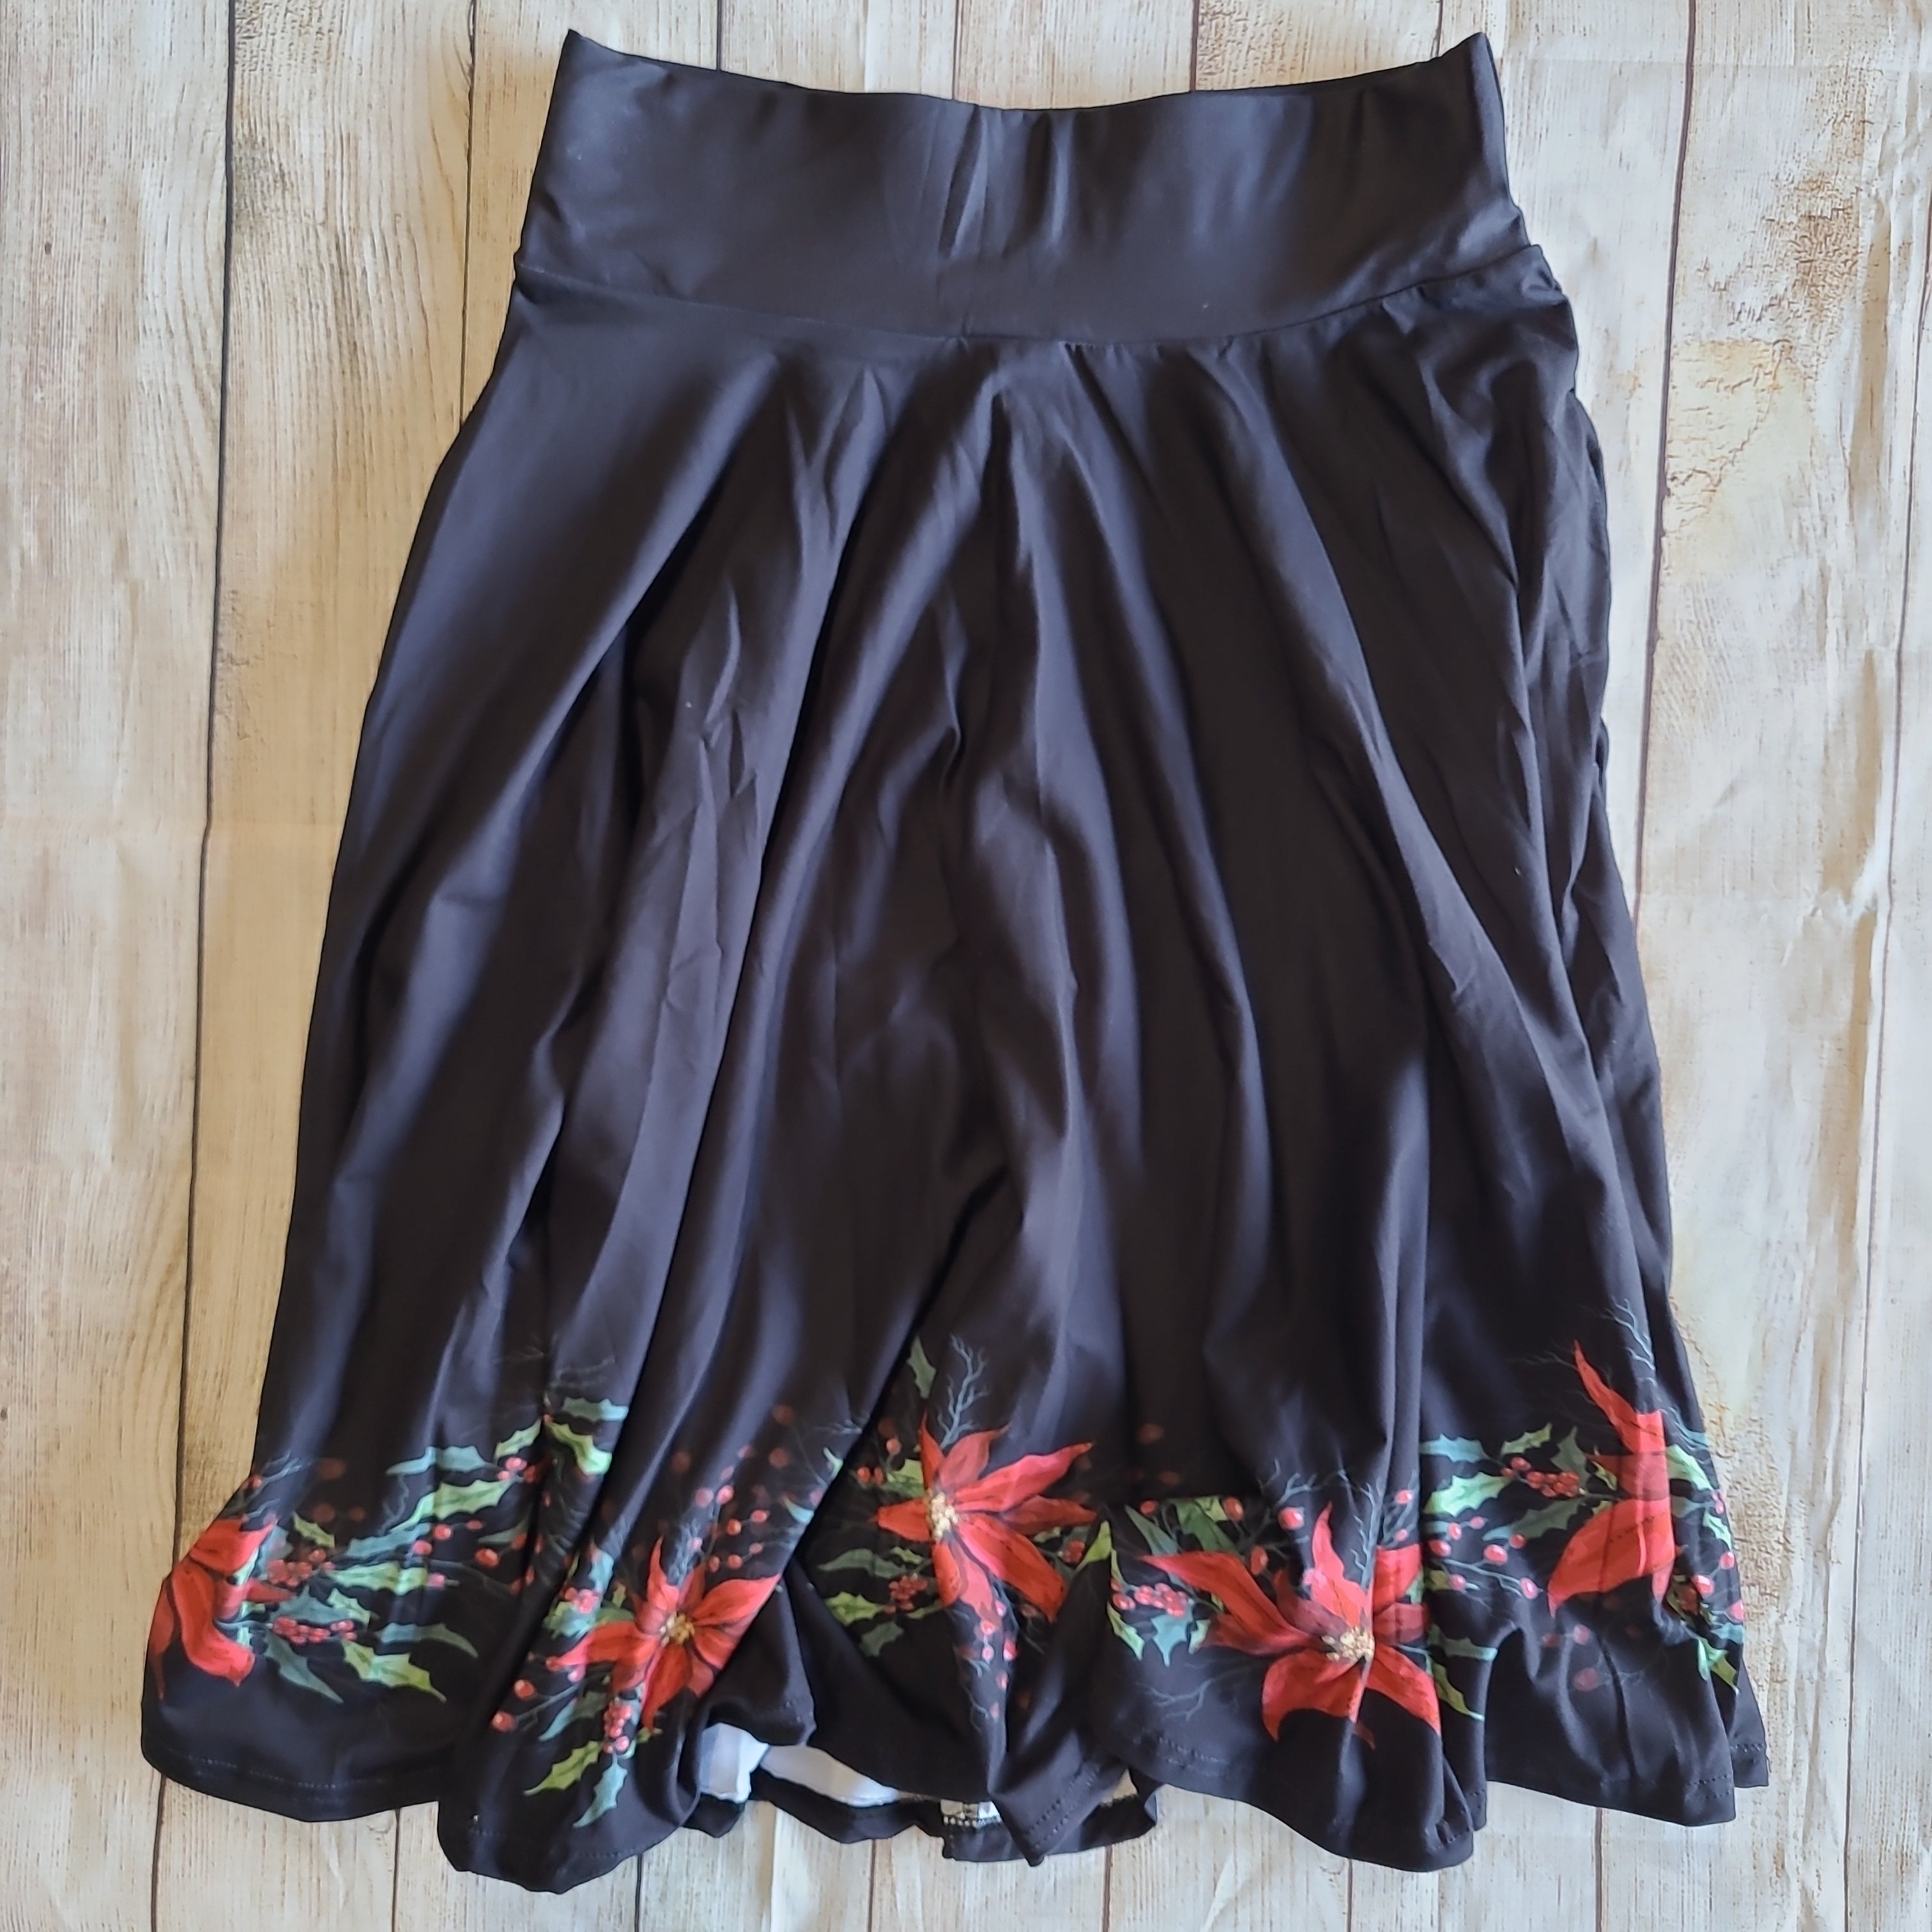 Poinsettia Skirt